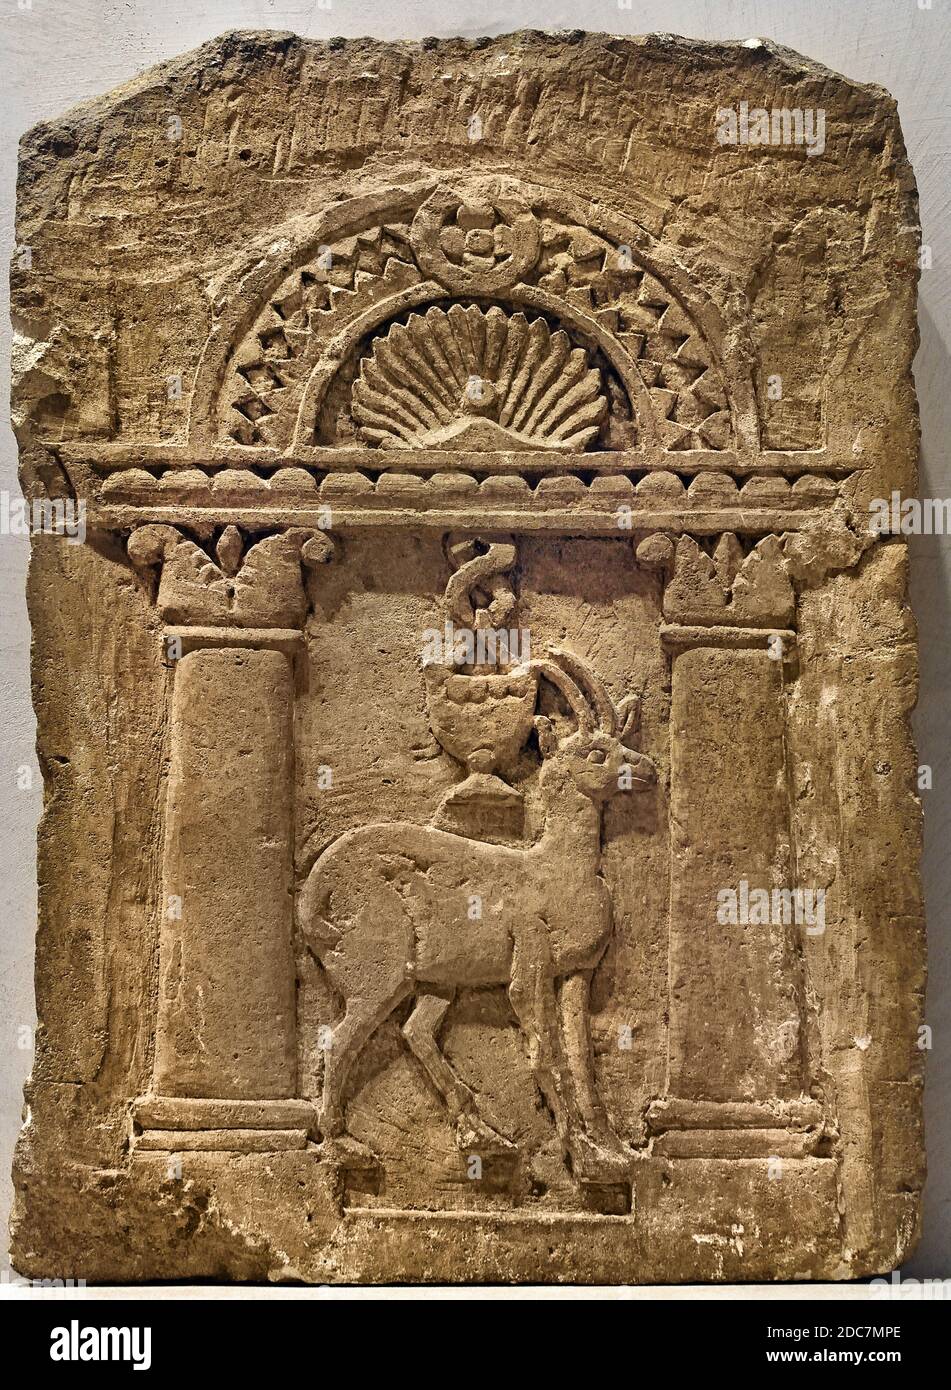 Stele der Ärztin TSA 7. - 8. Jahrhundert Ägypten, ägyptisch (koptische Kunst ist die christliche Kunst des byzantinisch-griechisch-römischen Ägypten und der koptischen christlichen Kirchen.) Stockfoto